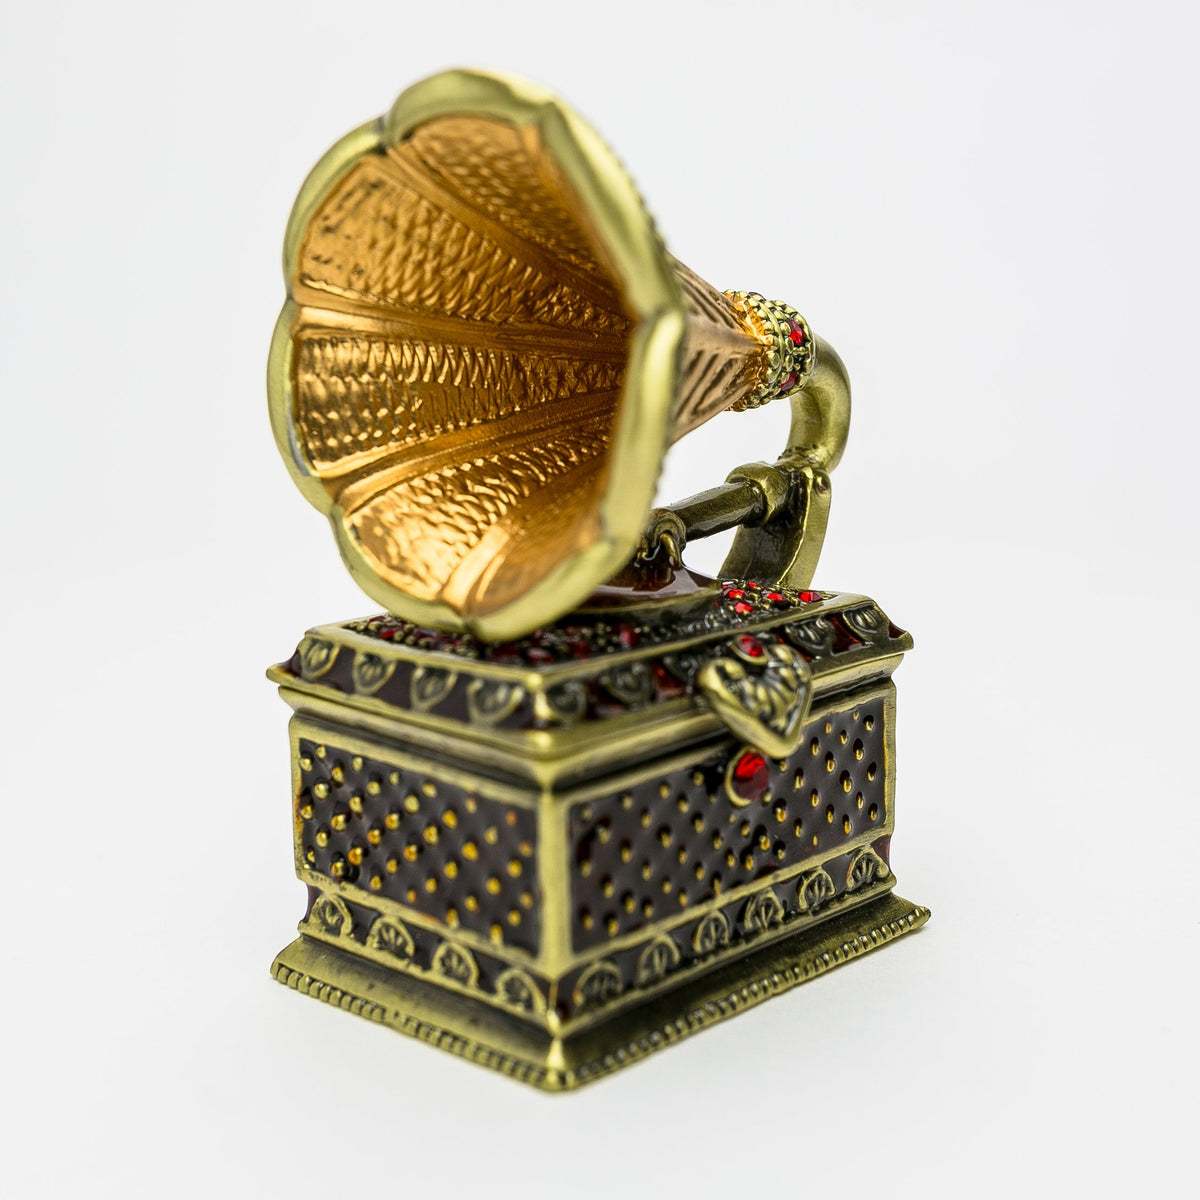 Gramophone antique